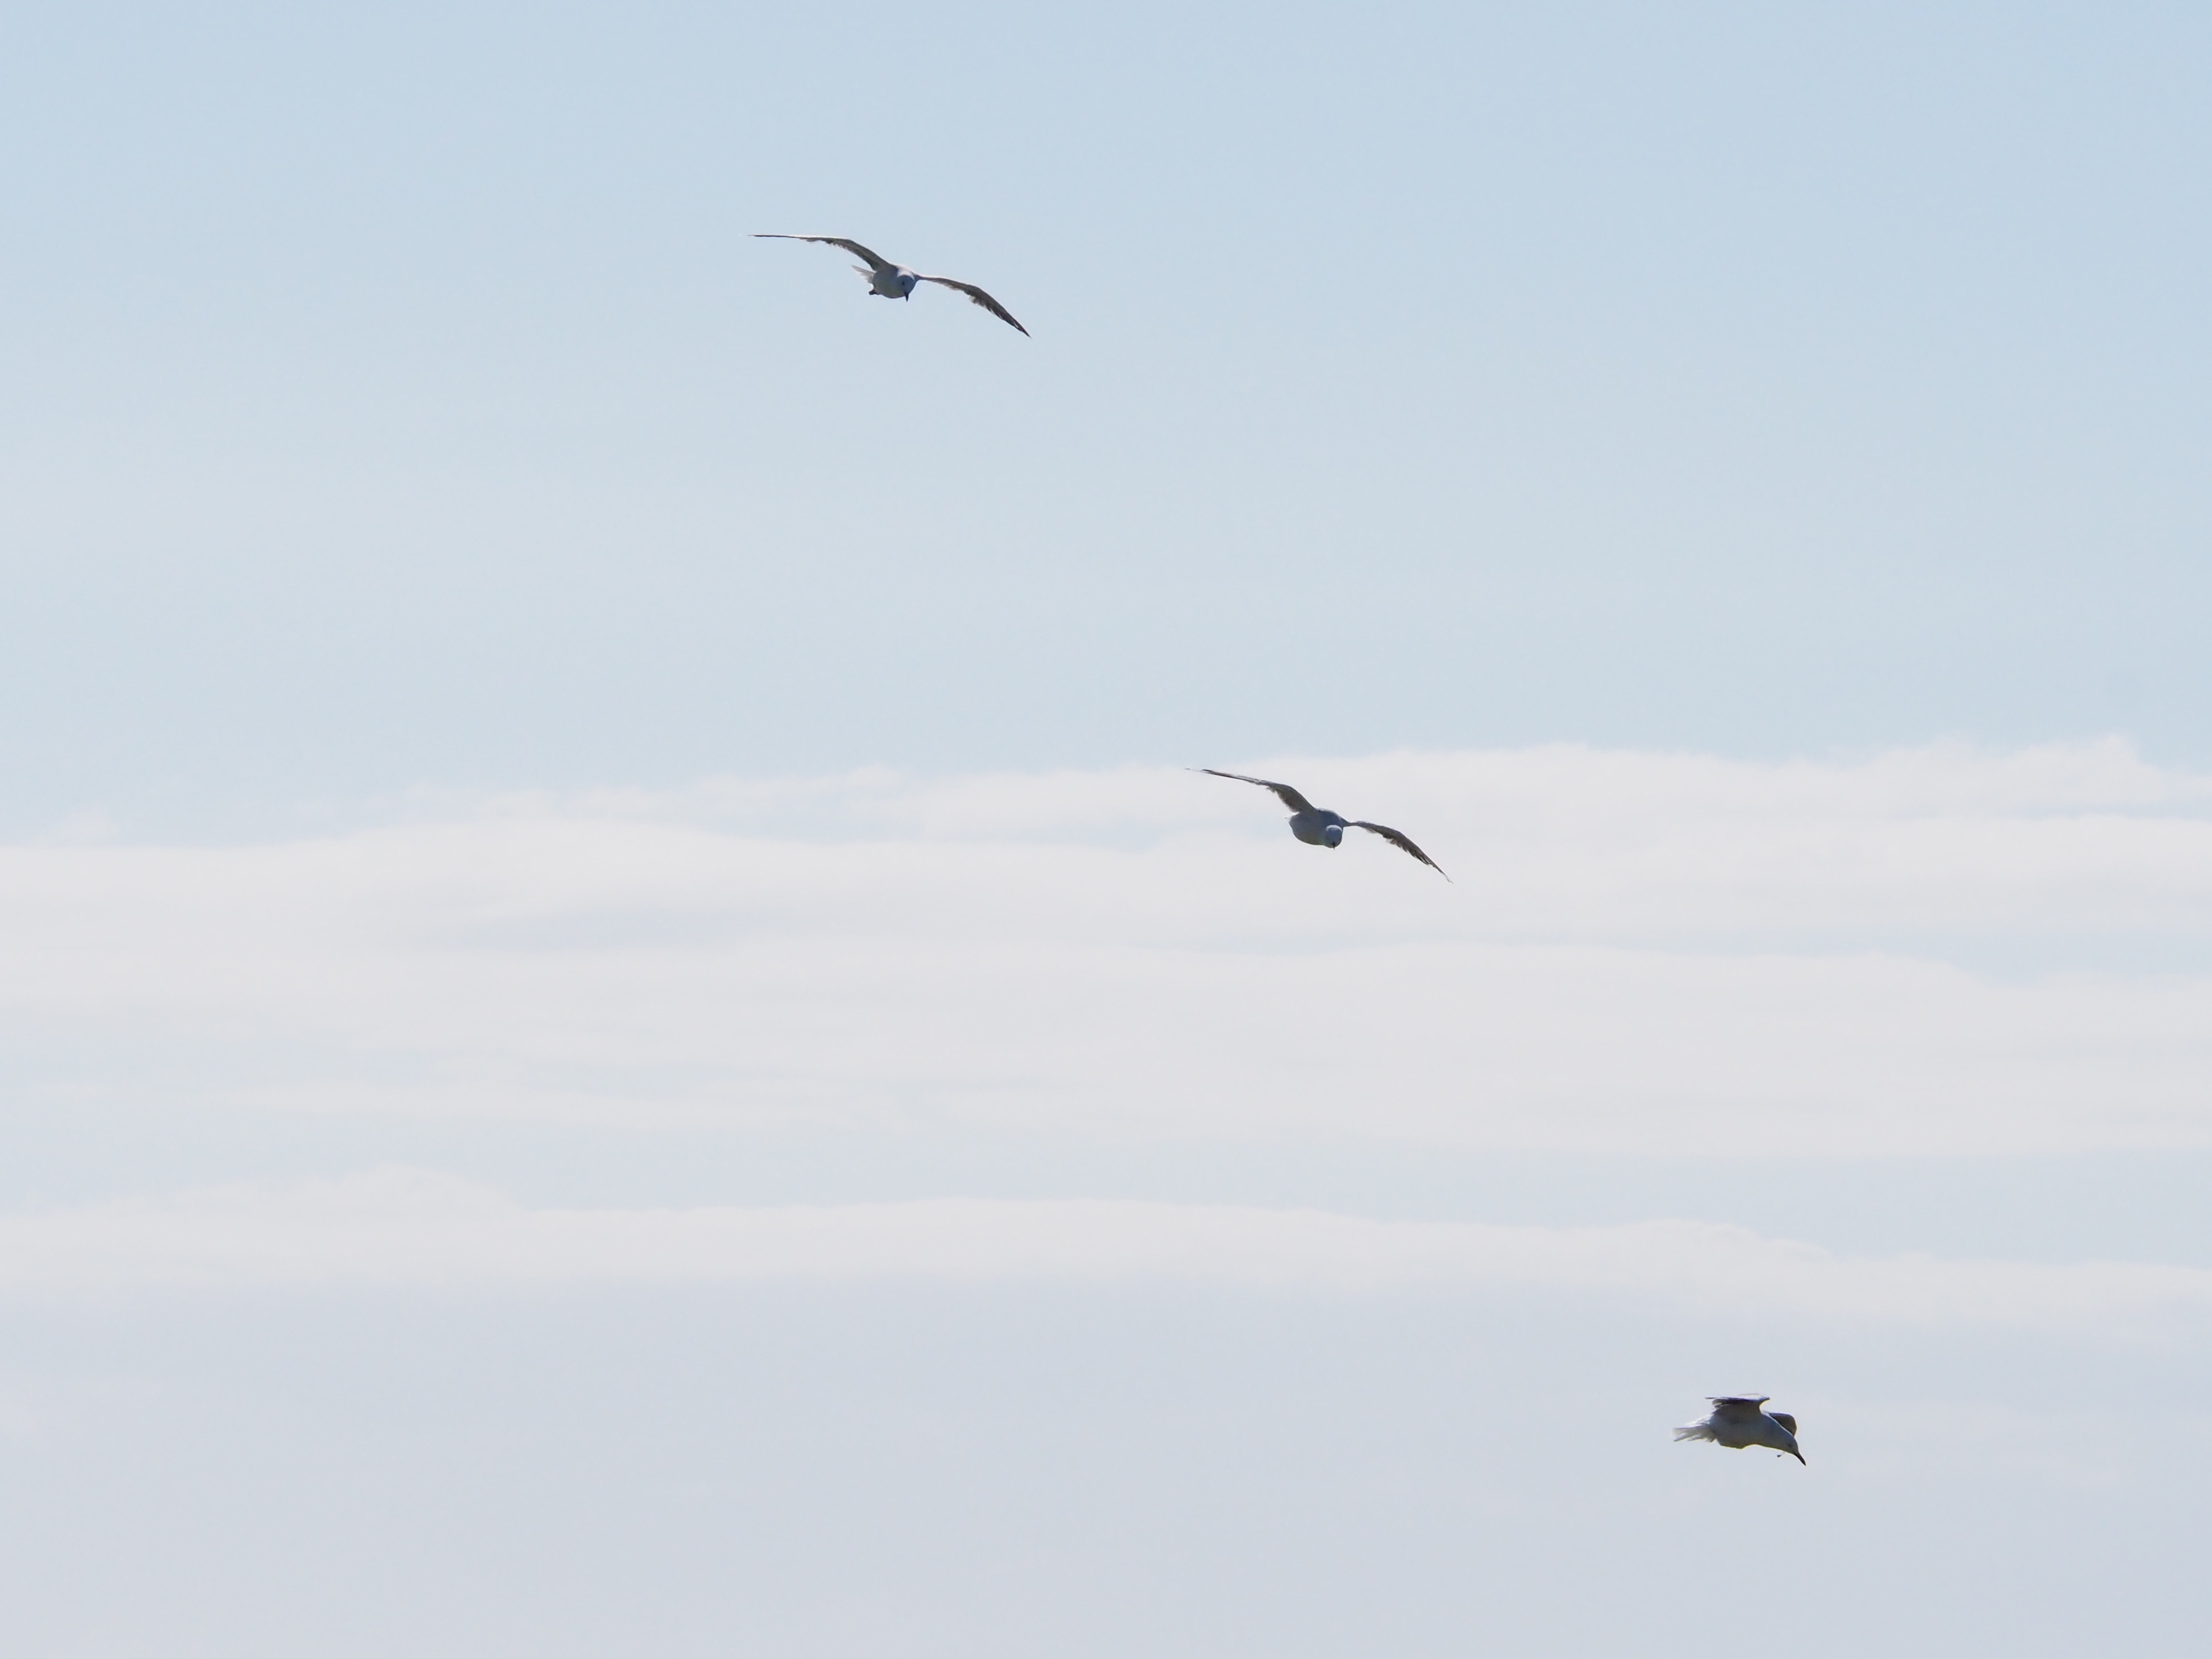 Three birds flying under blue sky at daytime photo